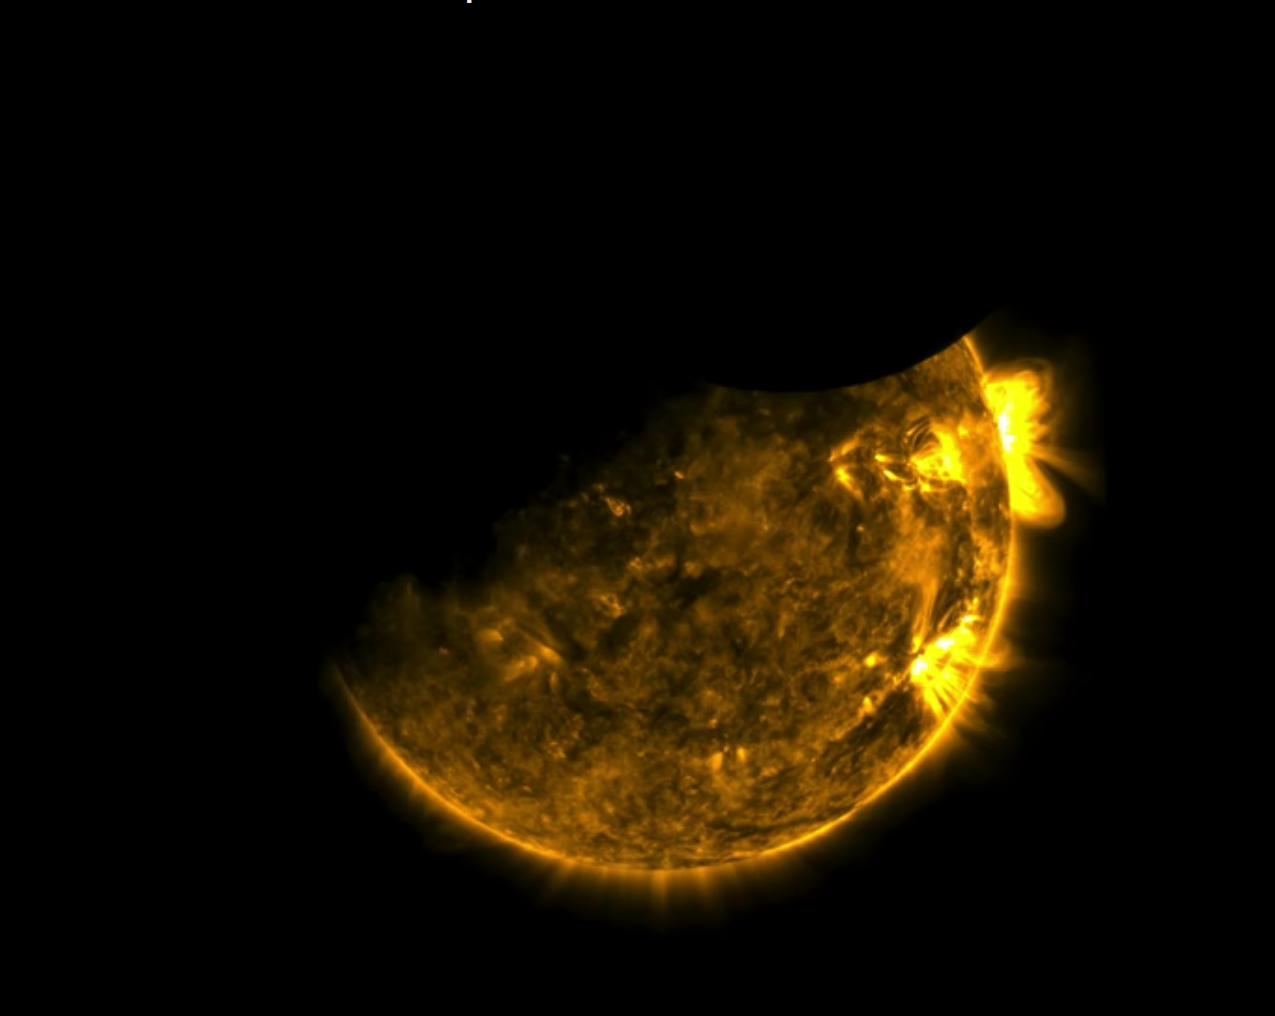 A Nap korongjának bal felső részét a Föld, jobb felső részét pedig a Hold takarja ki az SDO szeptember slsején készült felvételén